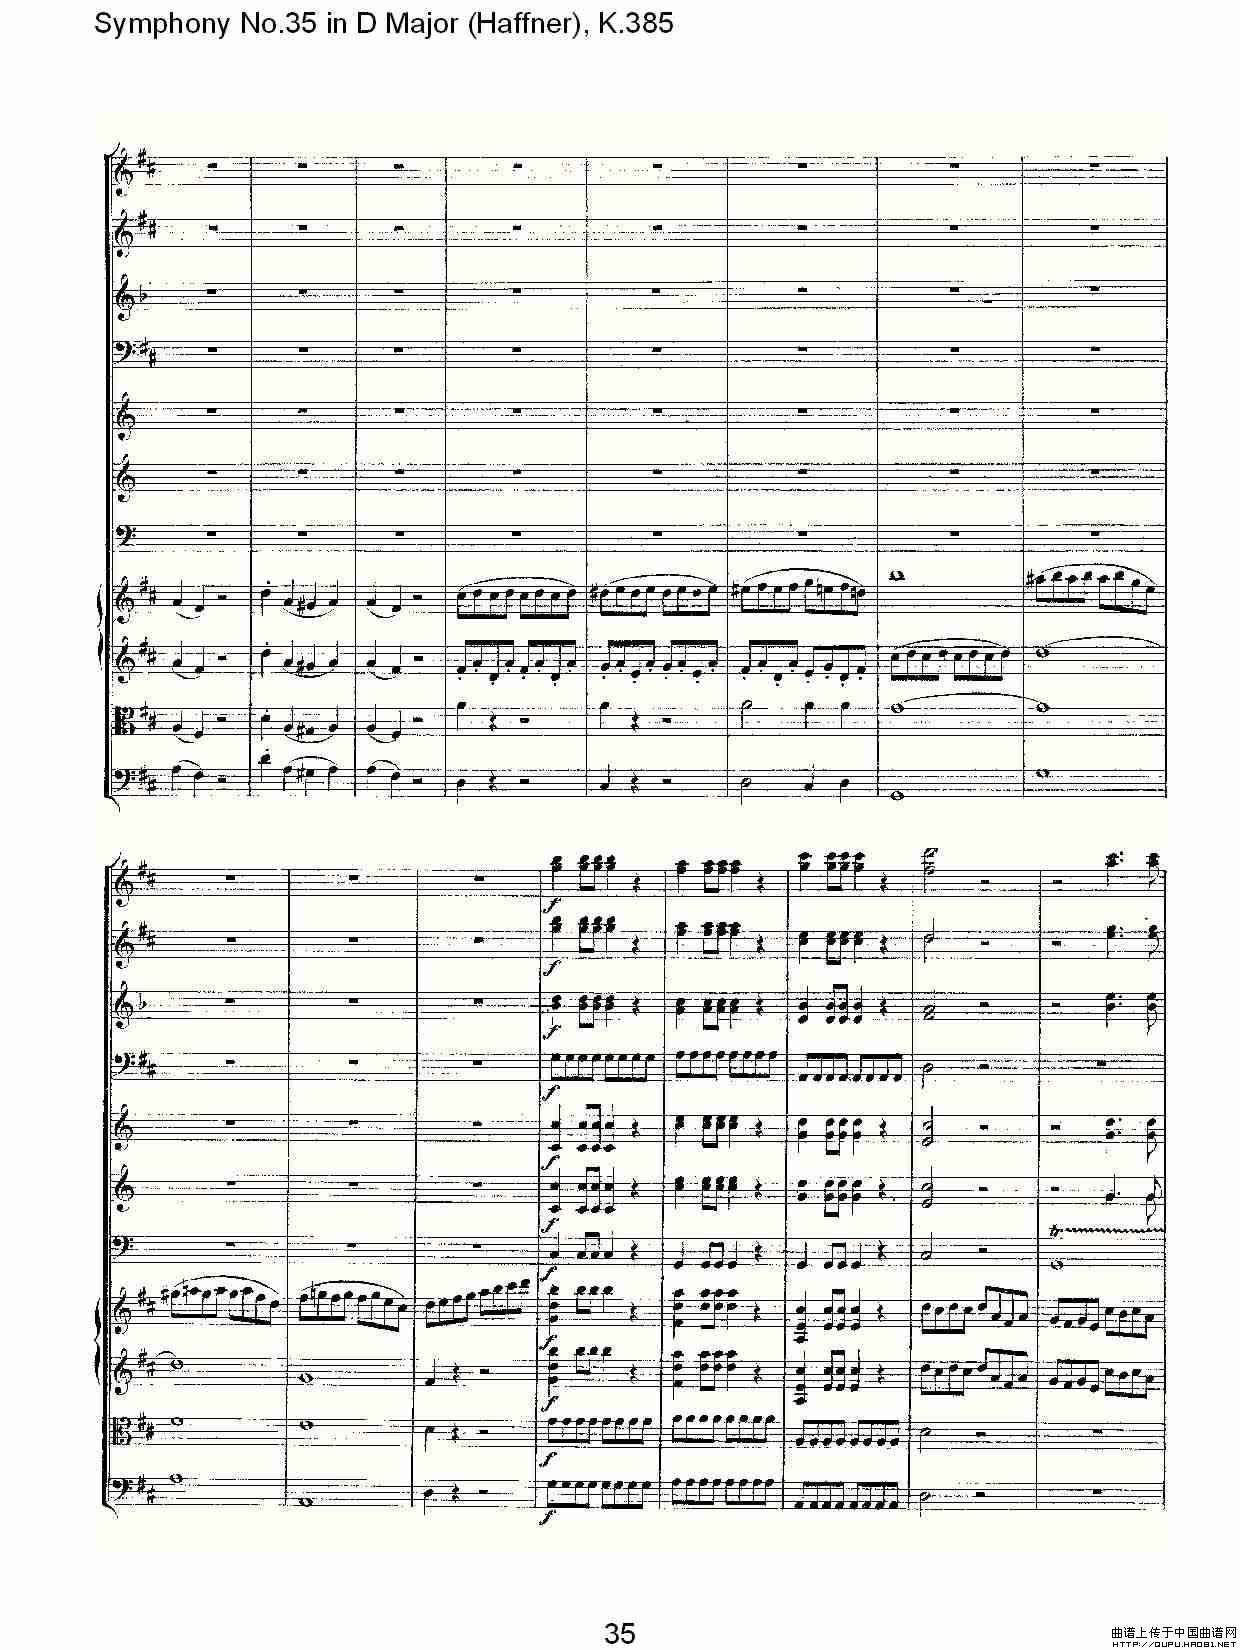 Symphony No.35 in D Major, K.385（D大调第三十五交响曲